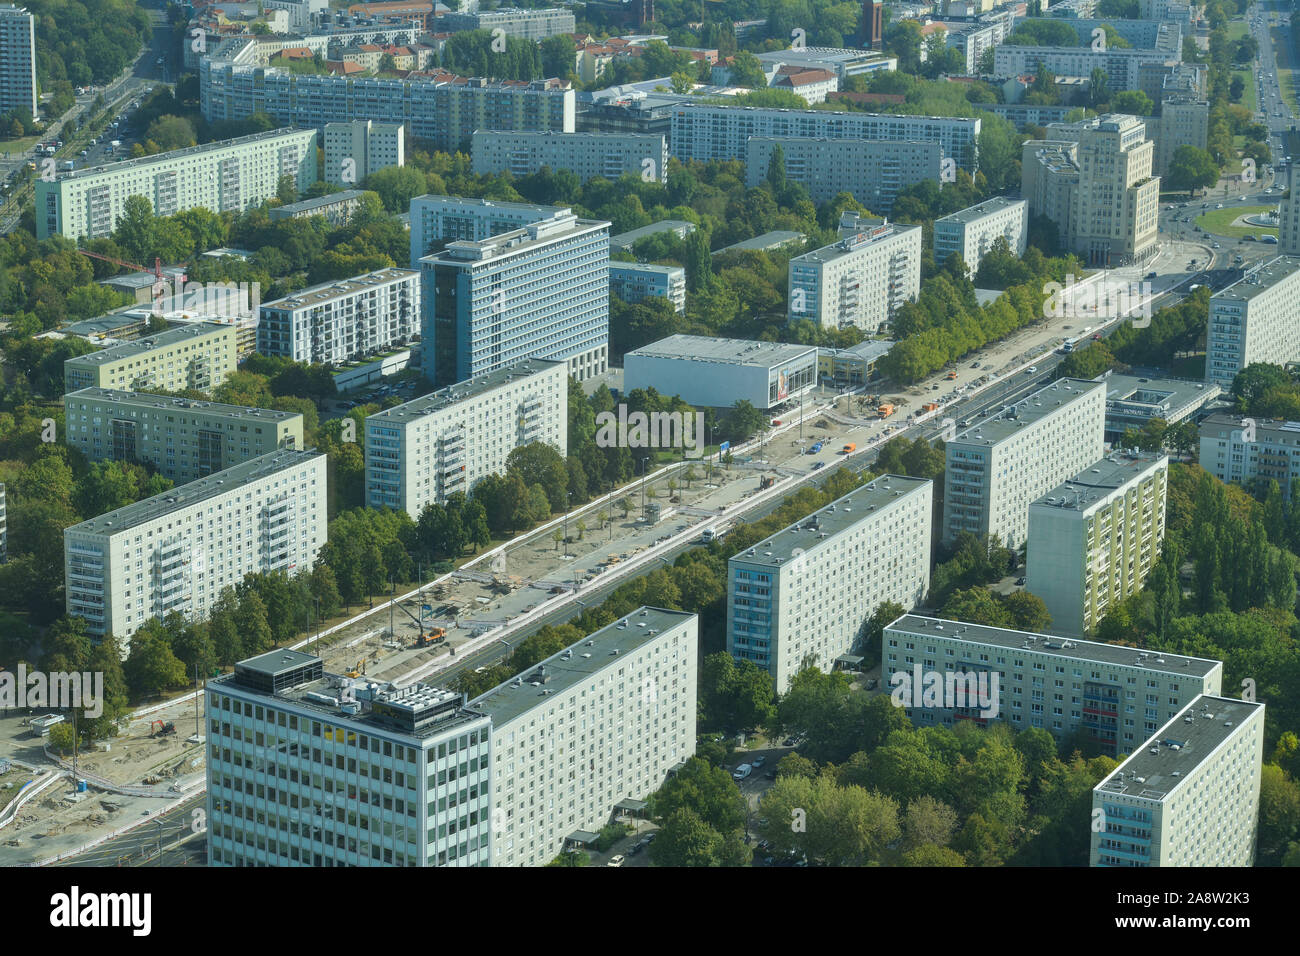 Stadtansicht Luftbild, Plattenbauten, Karl-Marx-Allee, Mitte, Berlin, Deutschland Stock Photo